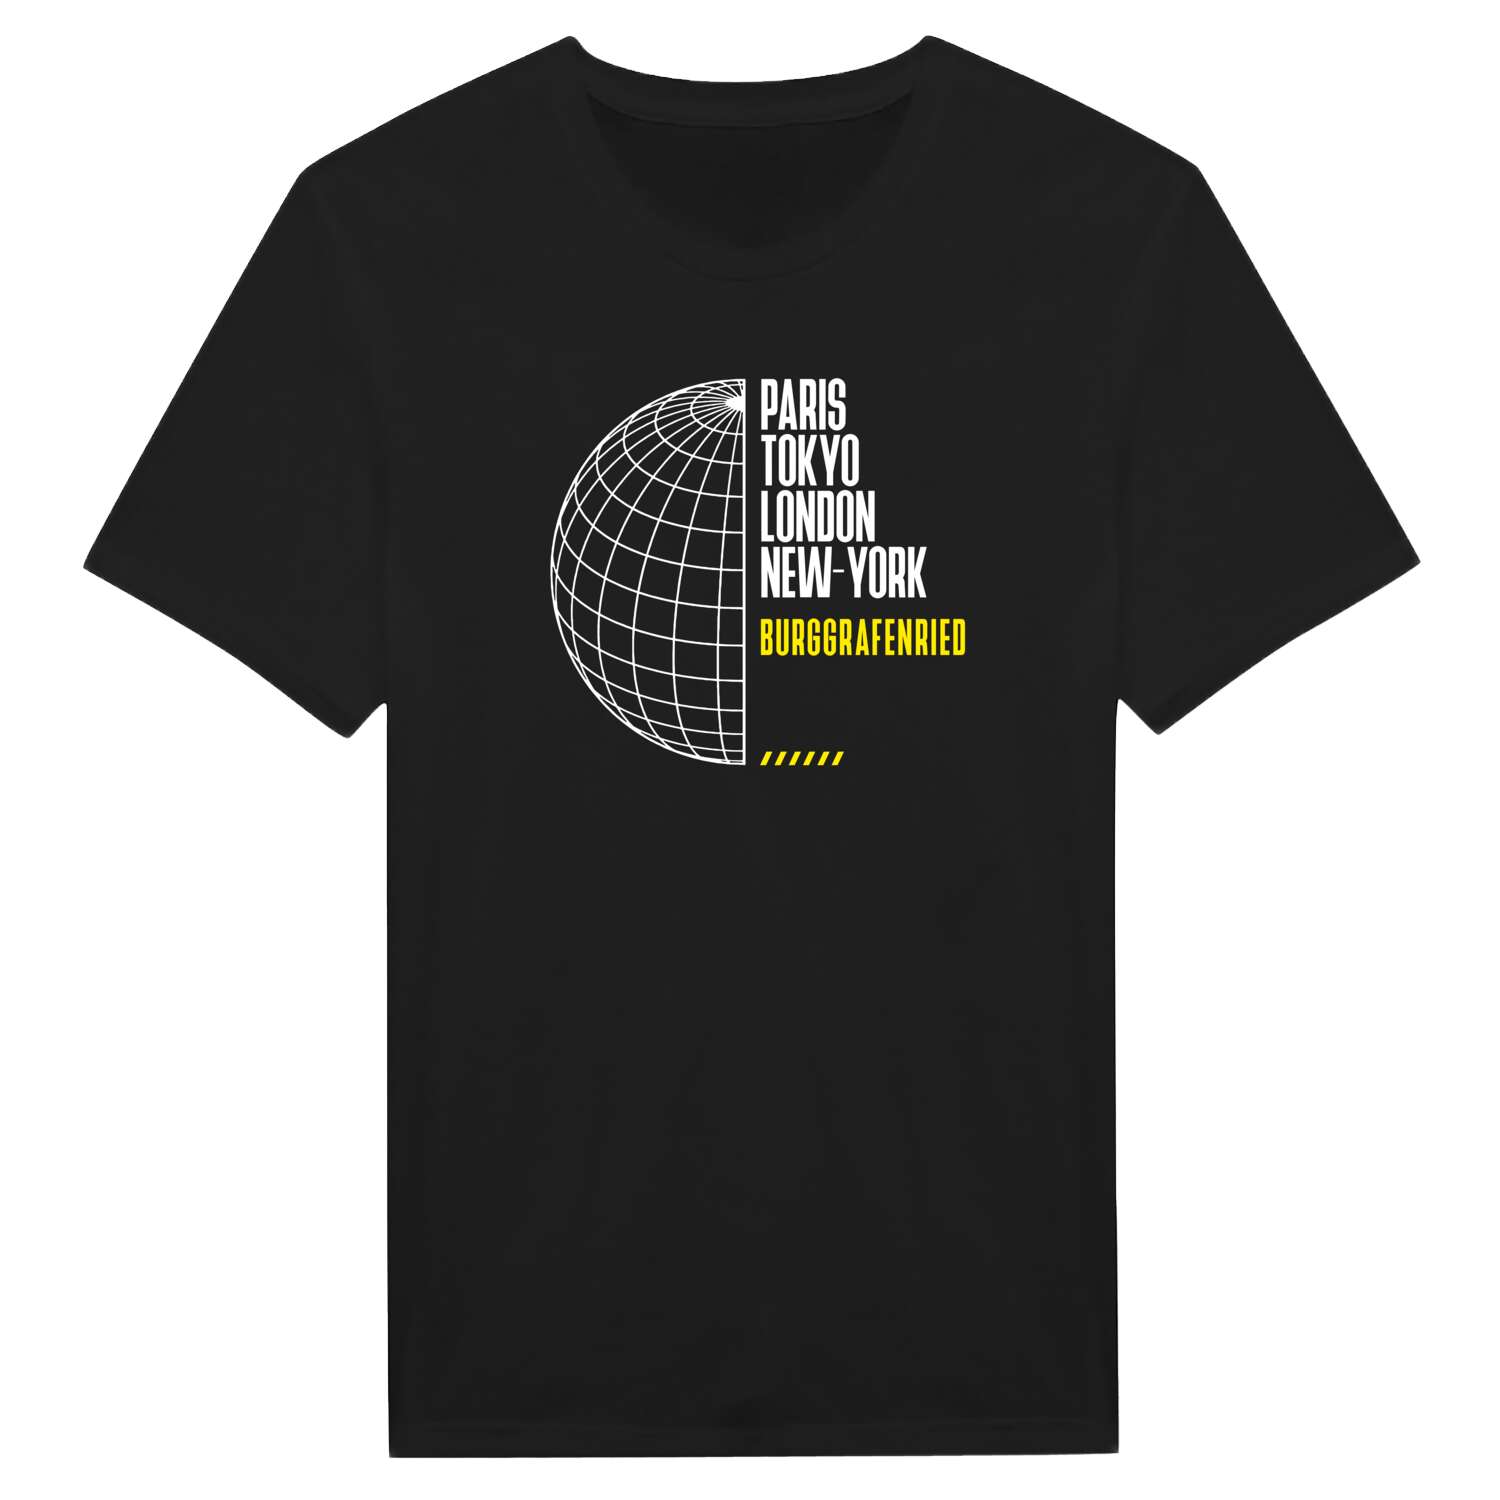 Burggrafenried T-Shirt »Paris Tokyo London«